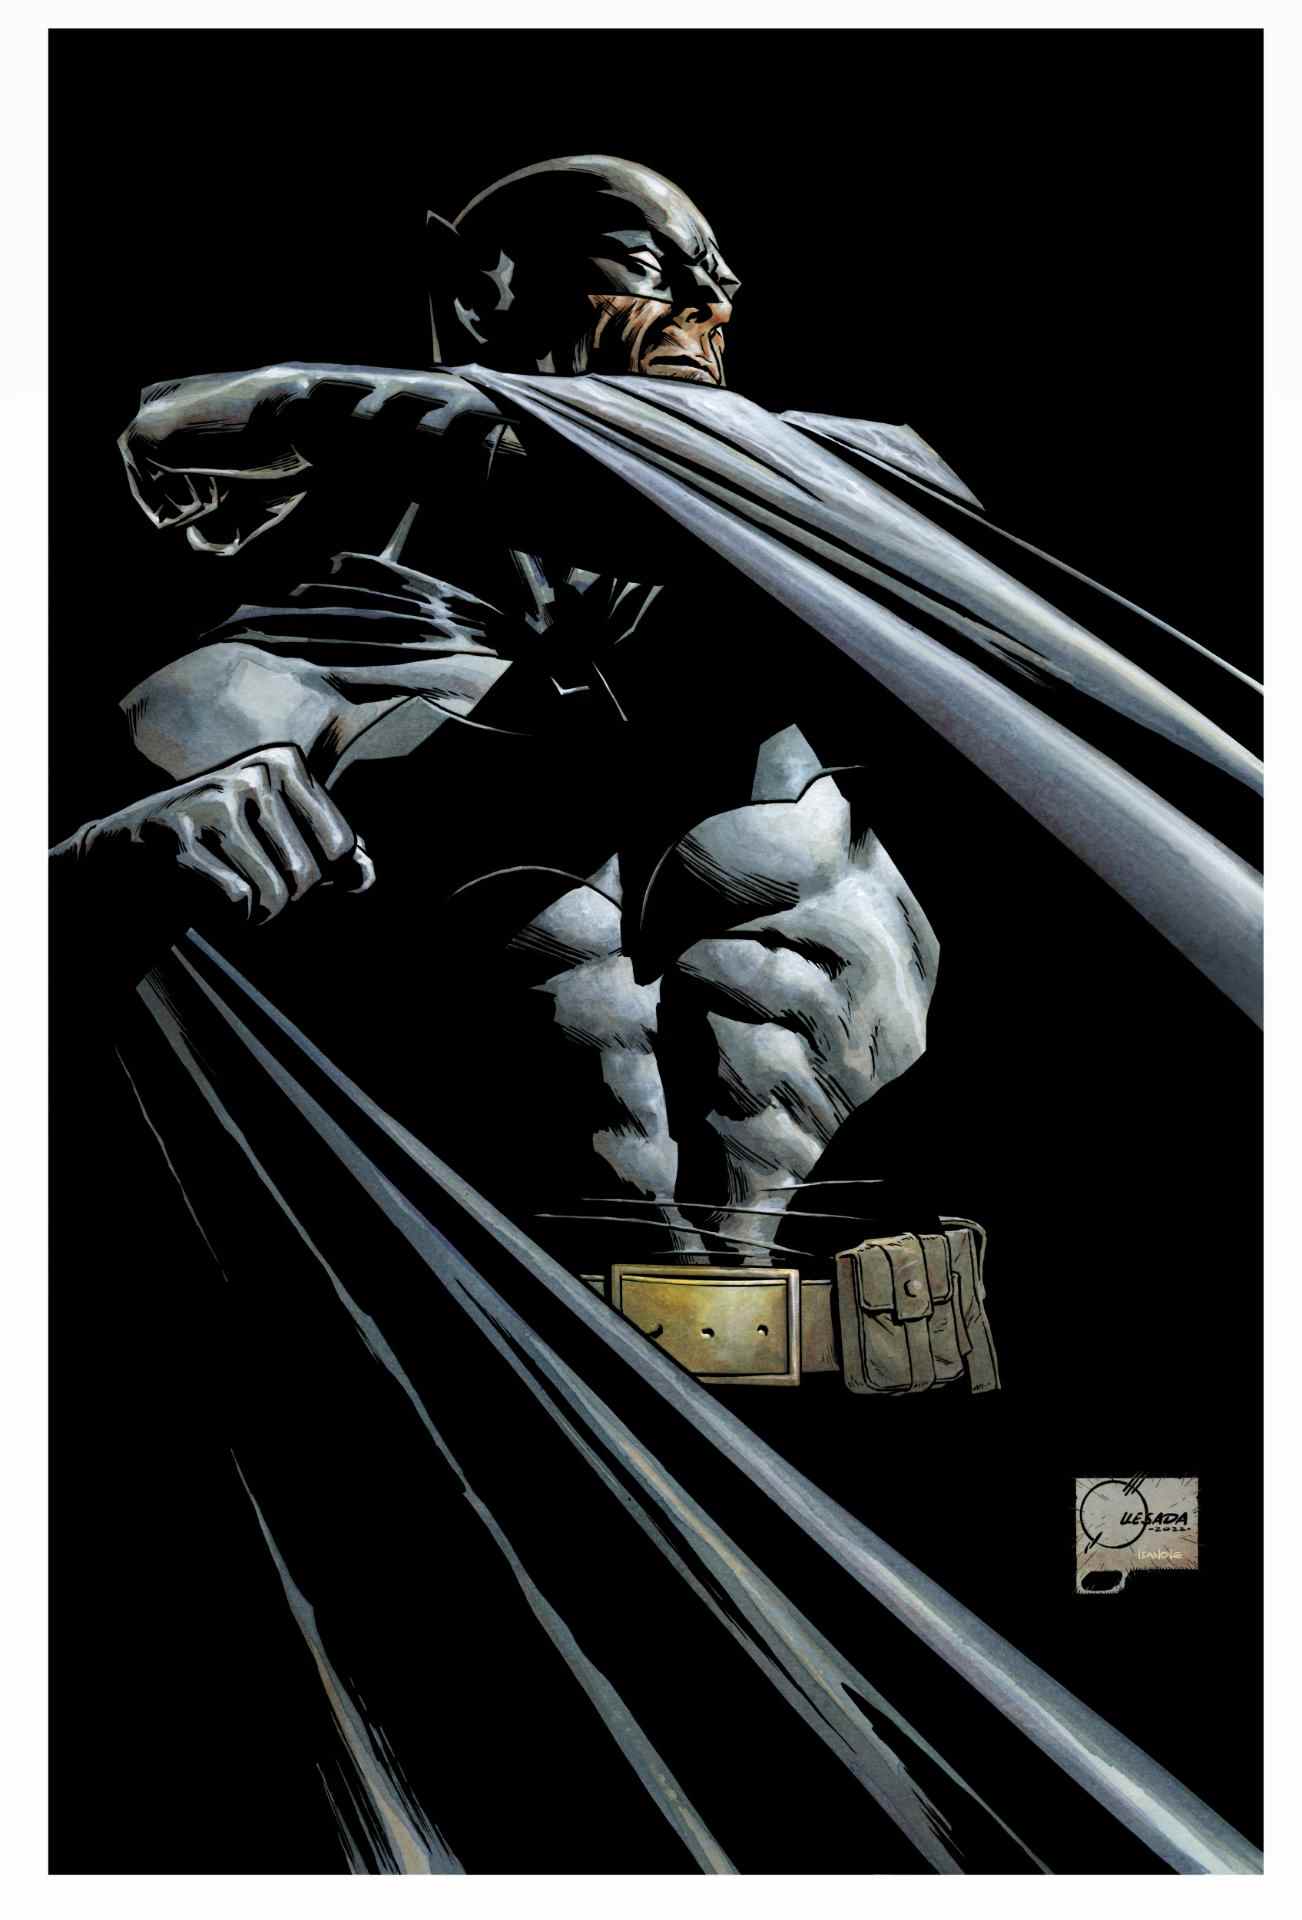 Couverture de Batman #131 par Joe Quesada